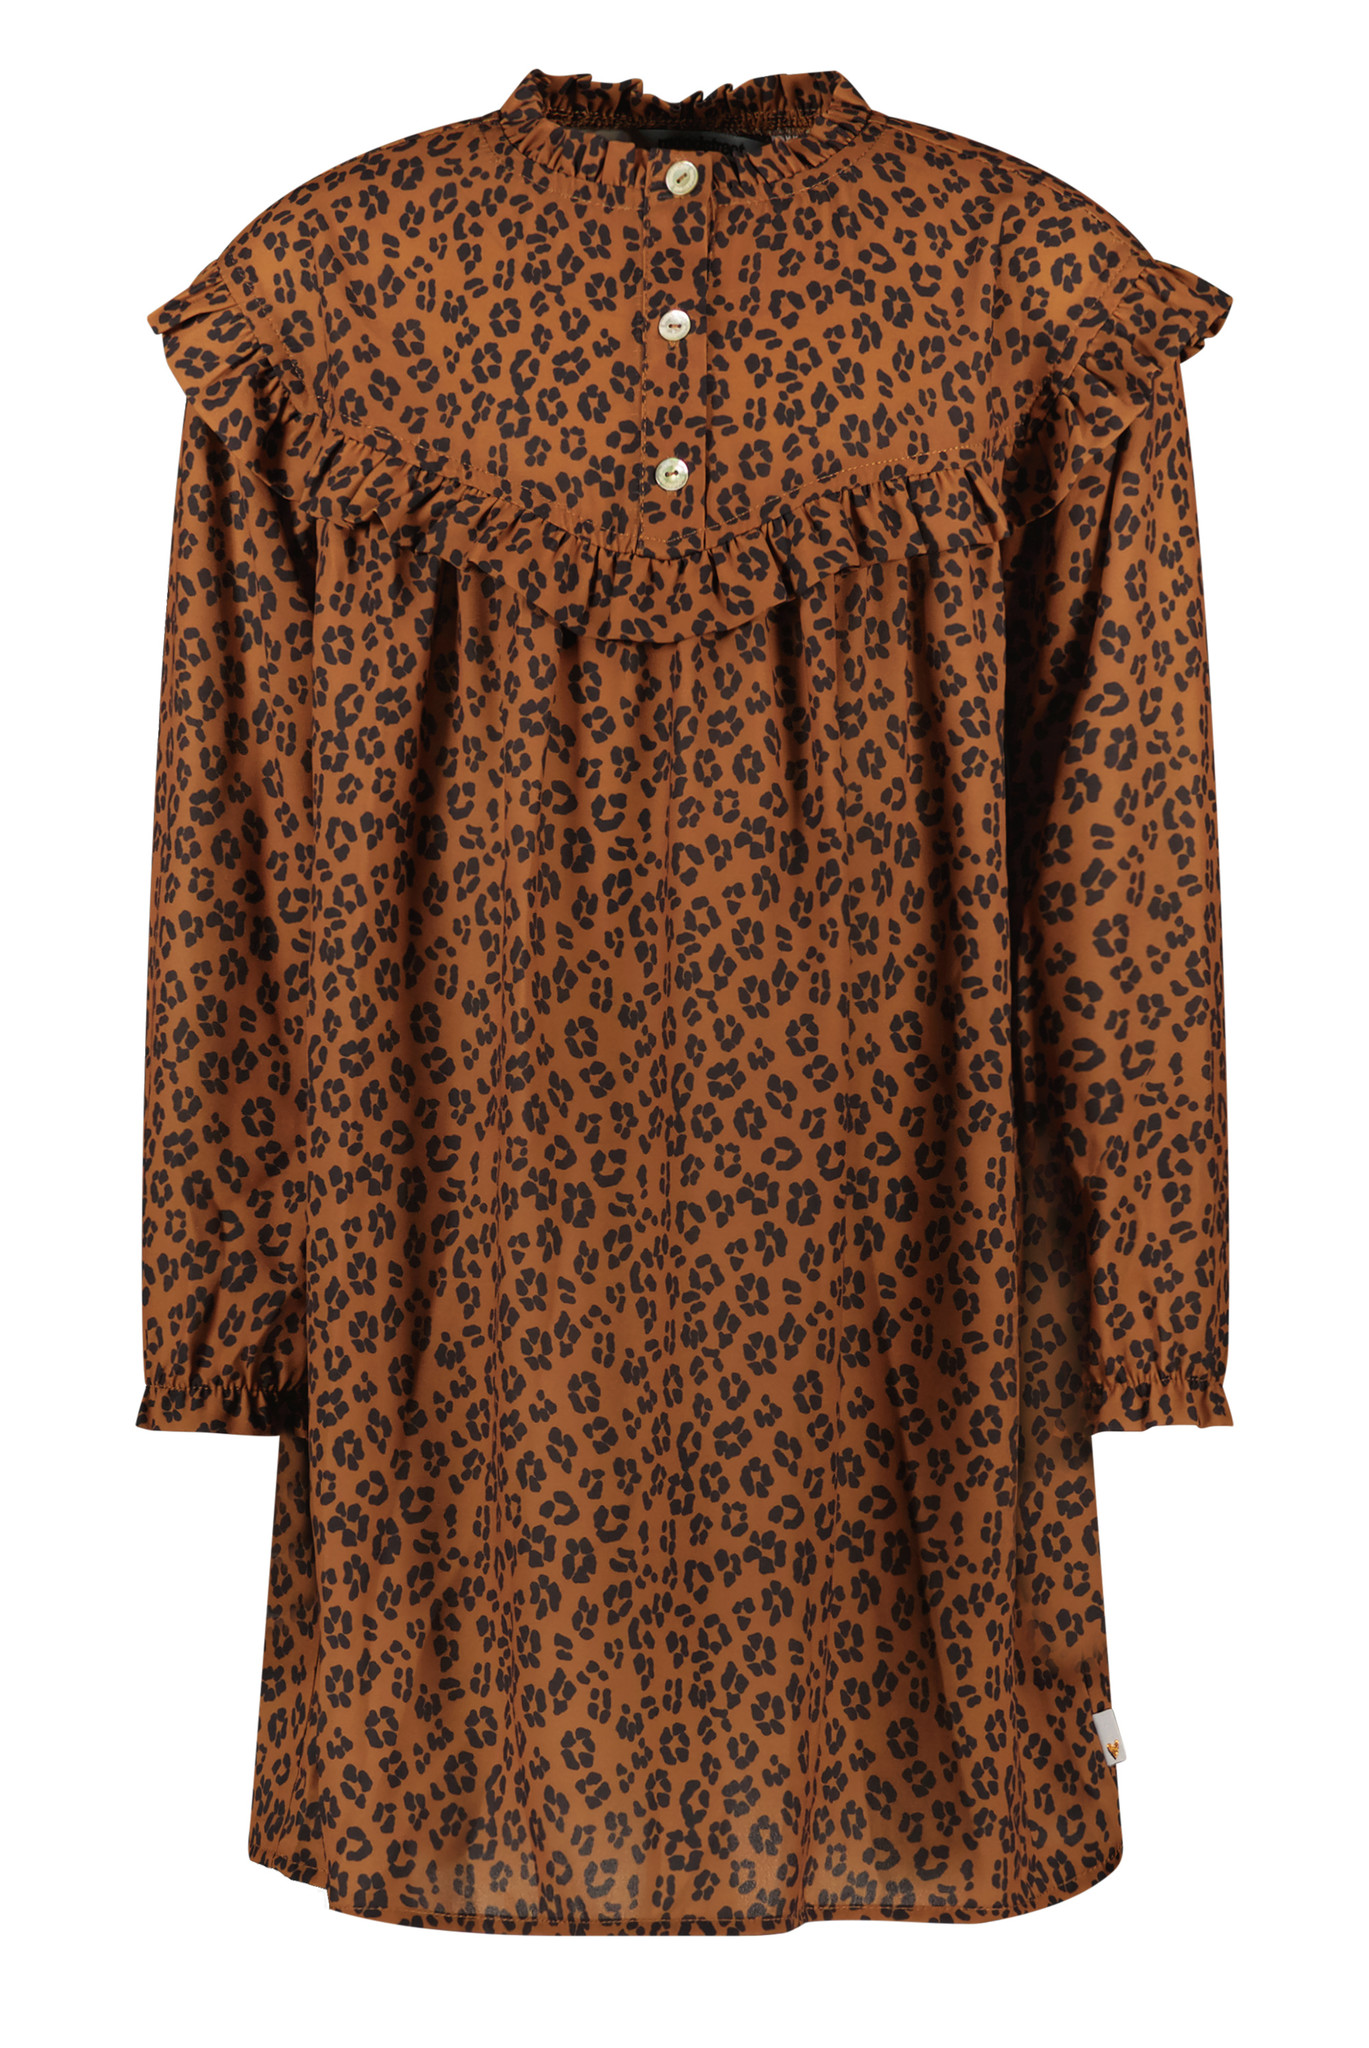 Moodstreet Dress Recycled Pes Aop Leopard Jurken Meisjes - Rok - Jurk - Bruin - Maat 122/128